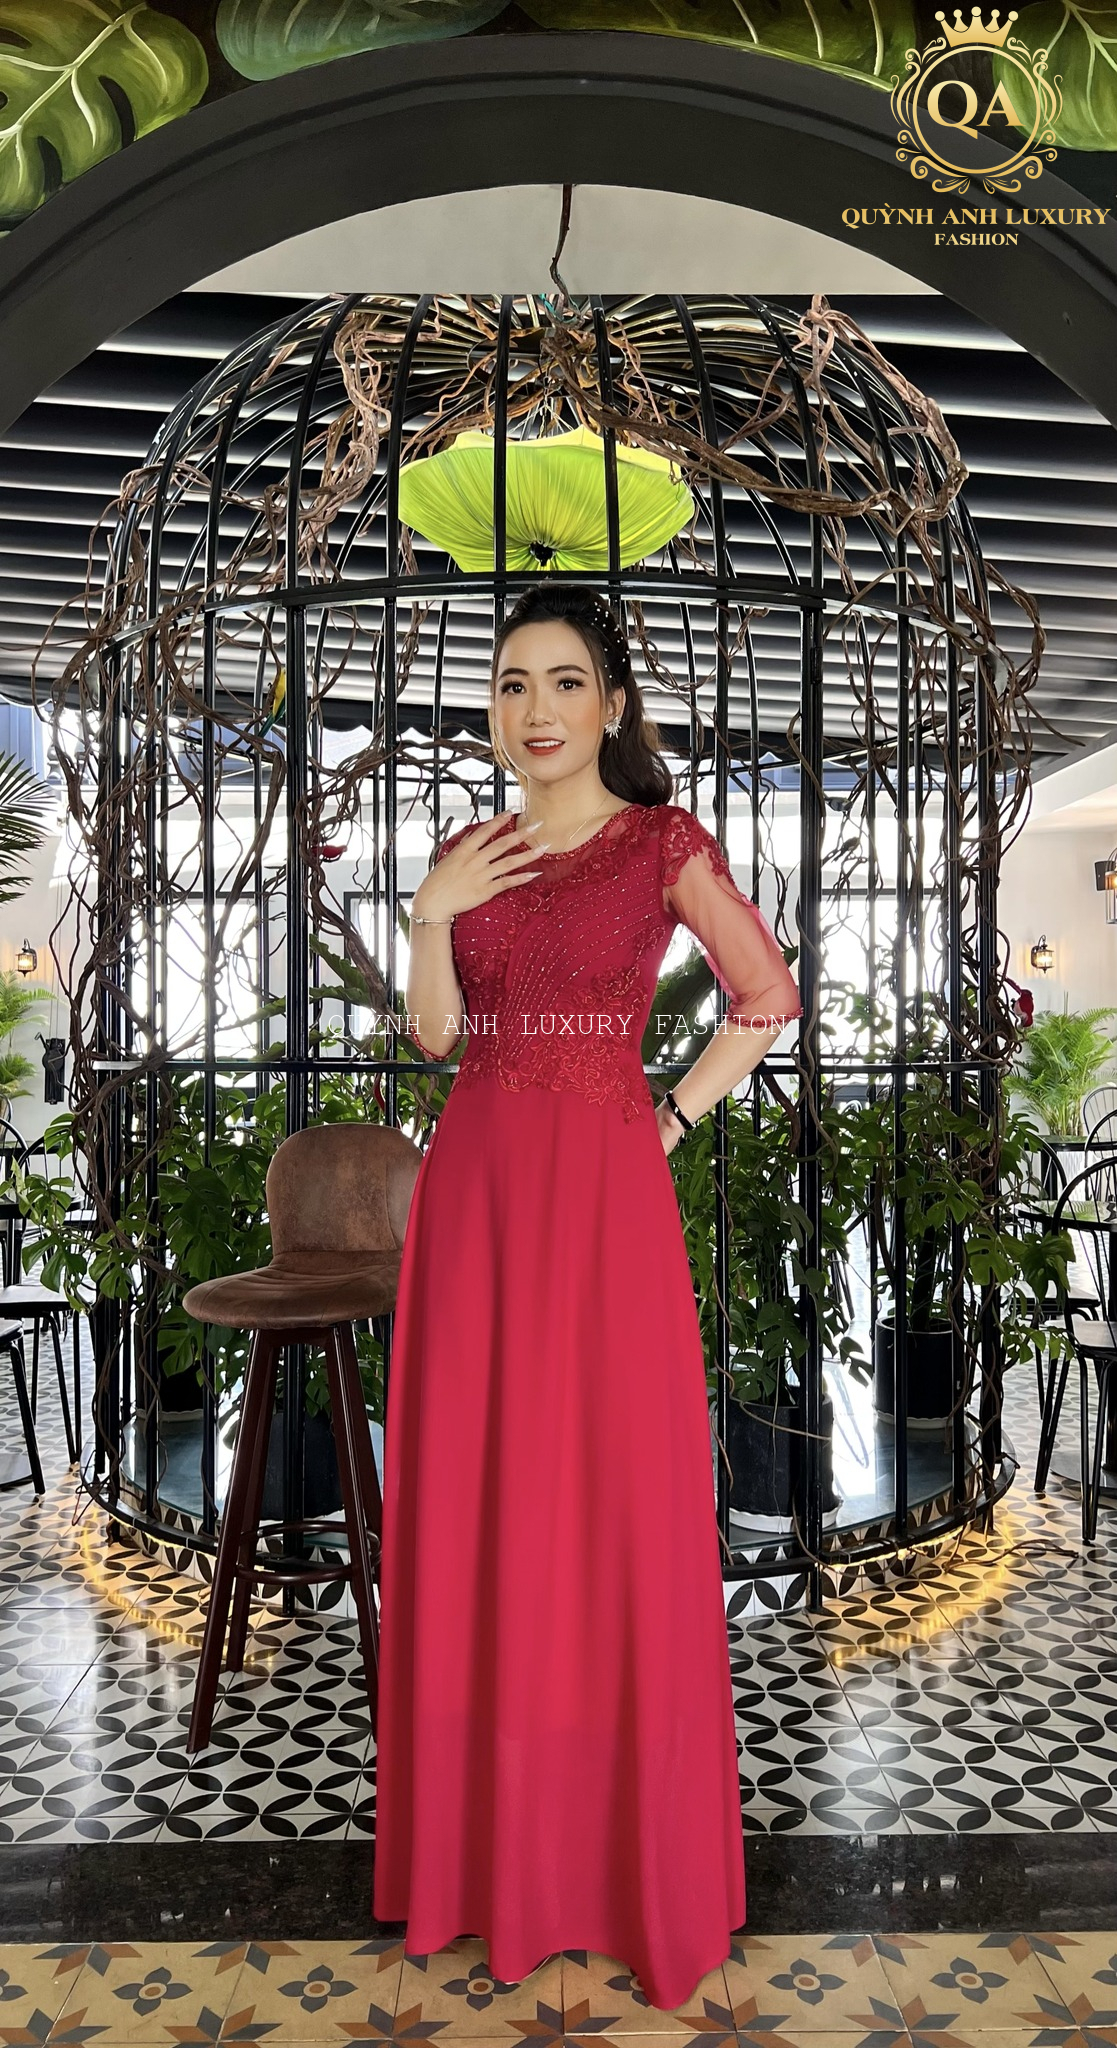 Top 4 kiểu đầm dạ hội bà sui đẹp nhất tại Quỳnh Anh Luxury